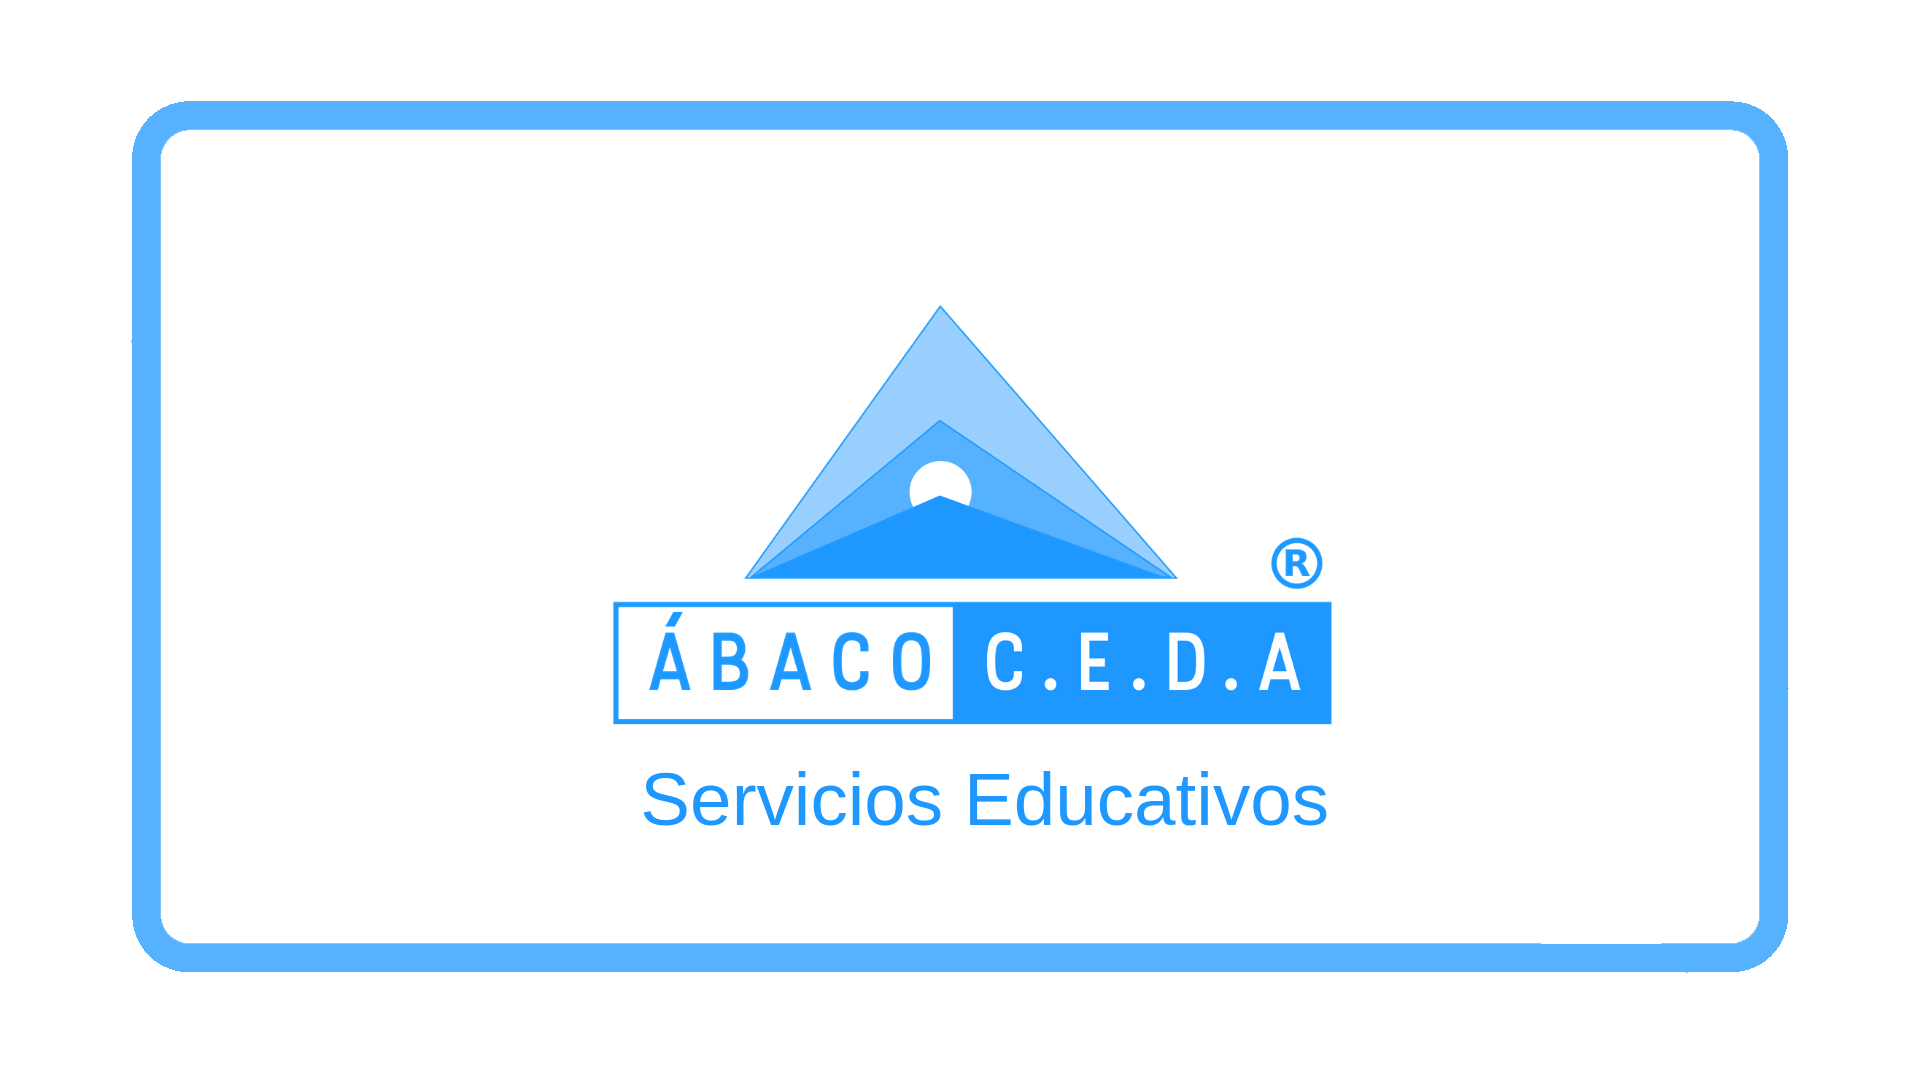 Ábaco Ceda Servicios Educativos Córdoba